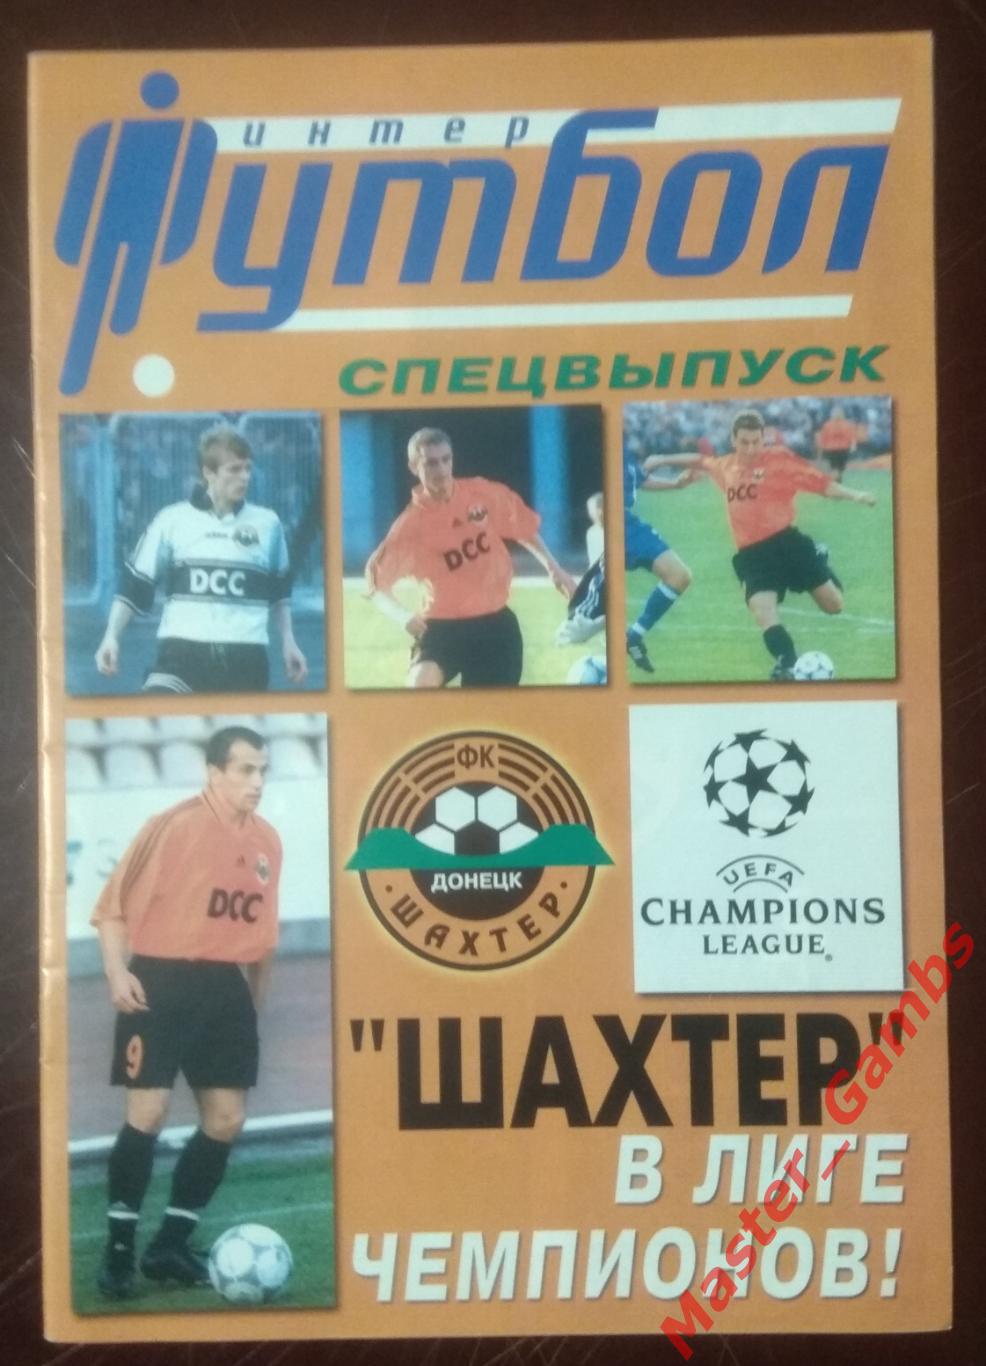 Журнал Футбол интер # 7 (30) 2000 (спецвыпуск Шахтер Донецк)